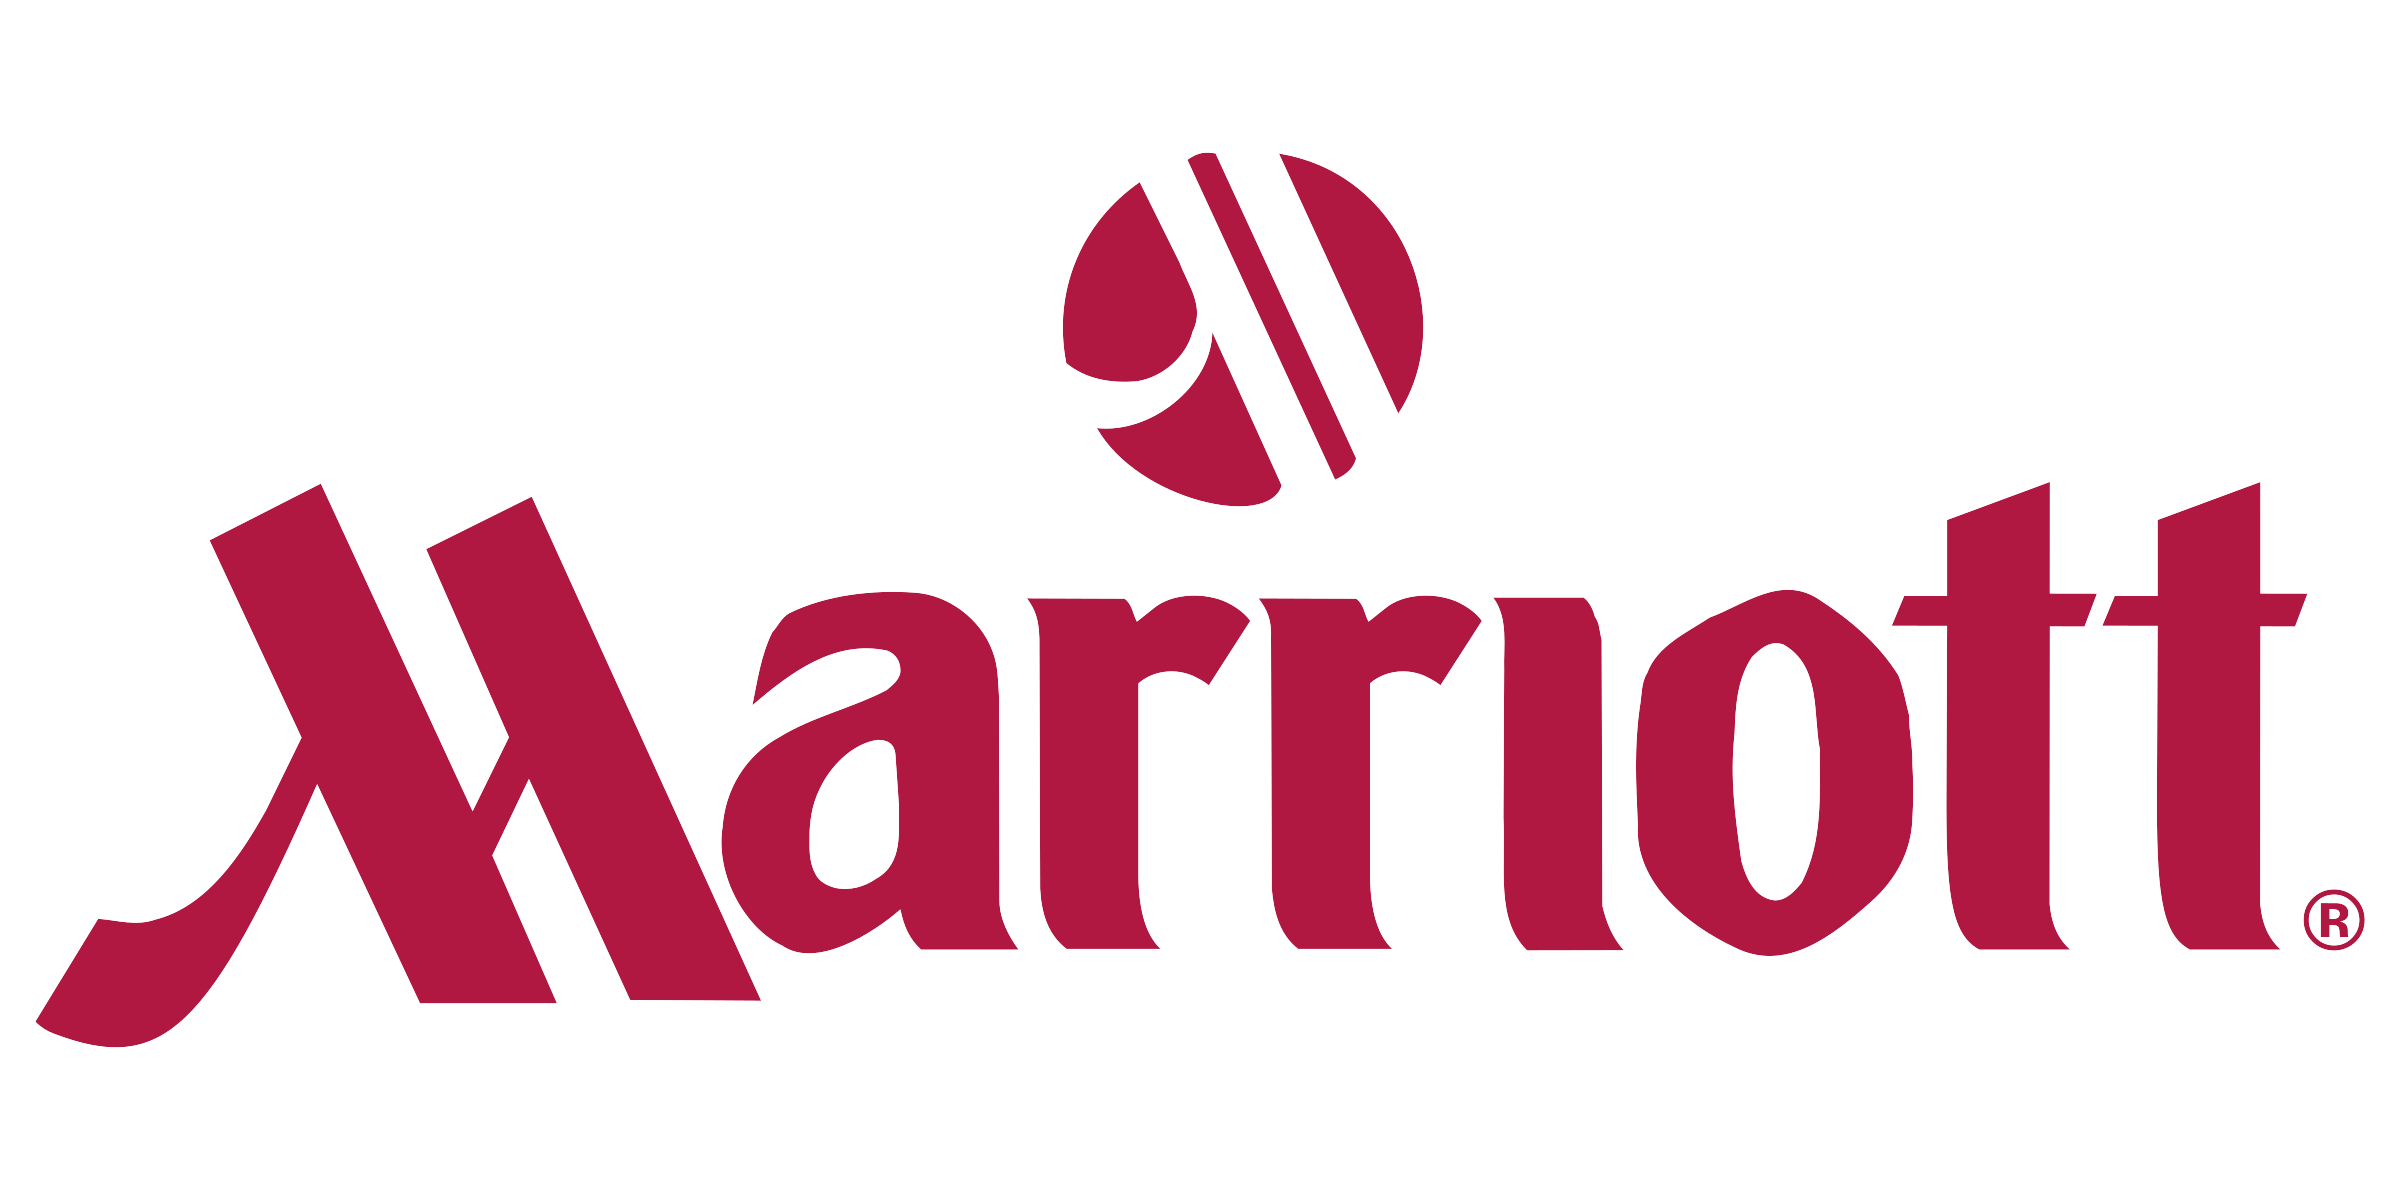 graphic design Marriott logo